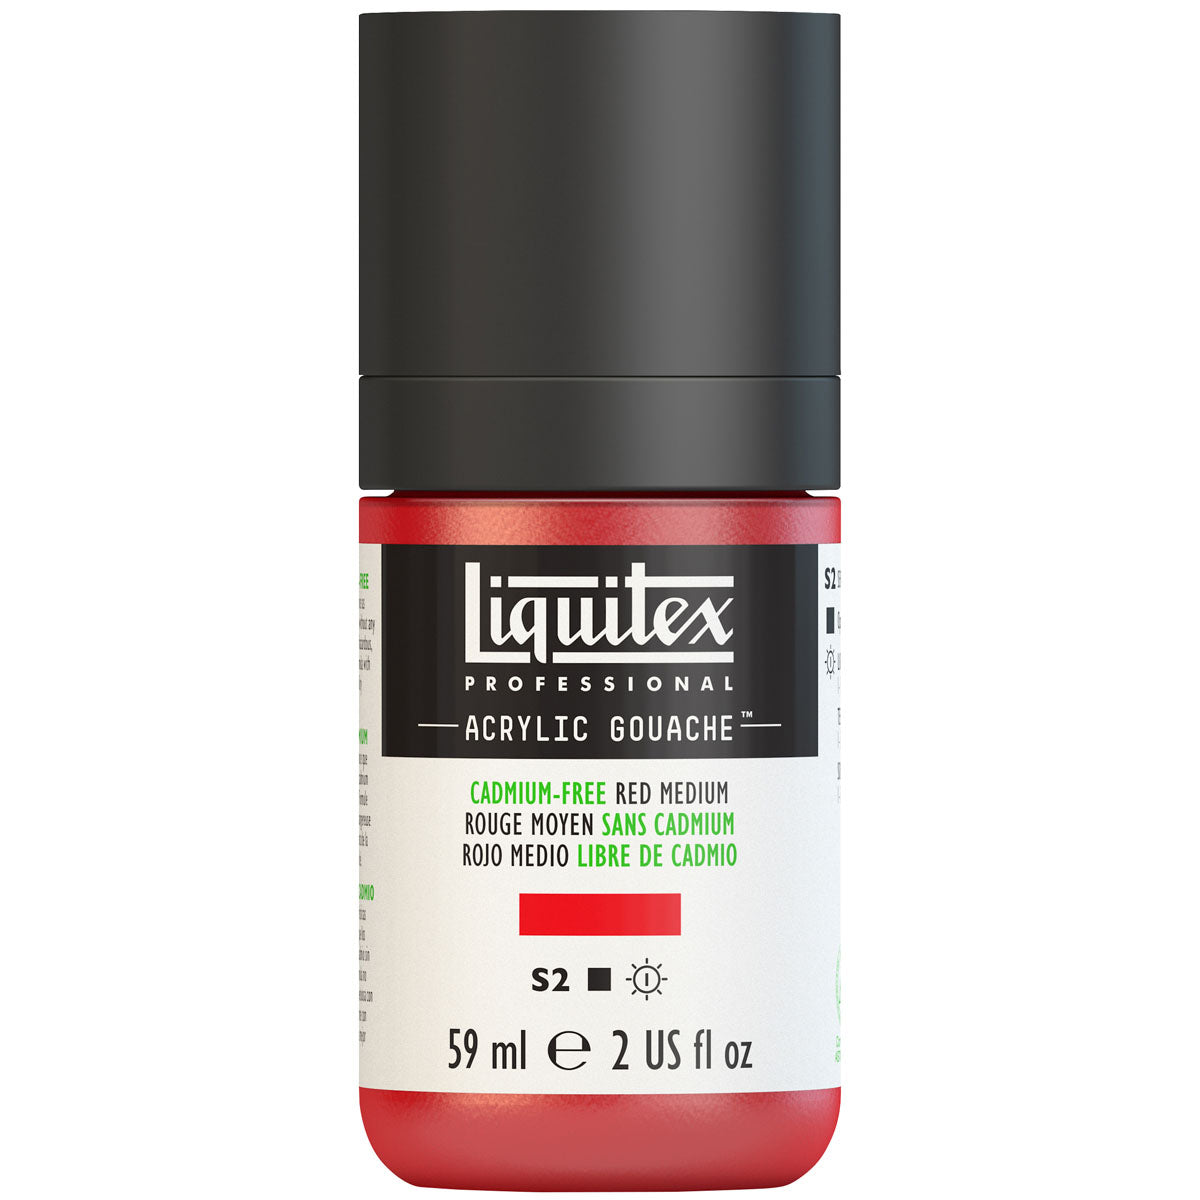 Liquitex - Acrylic Gouache 59ml S2 - Cadimum-Free Red Medium